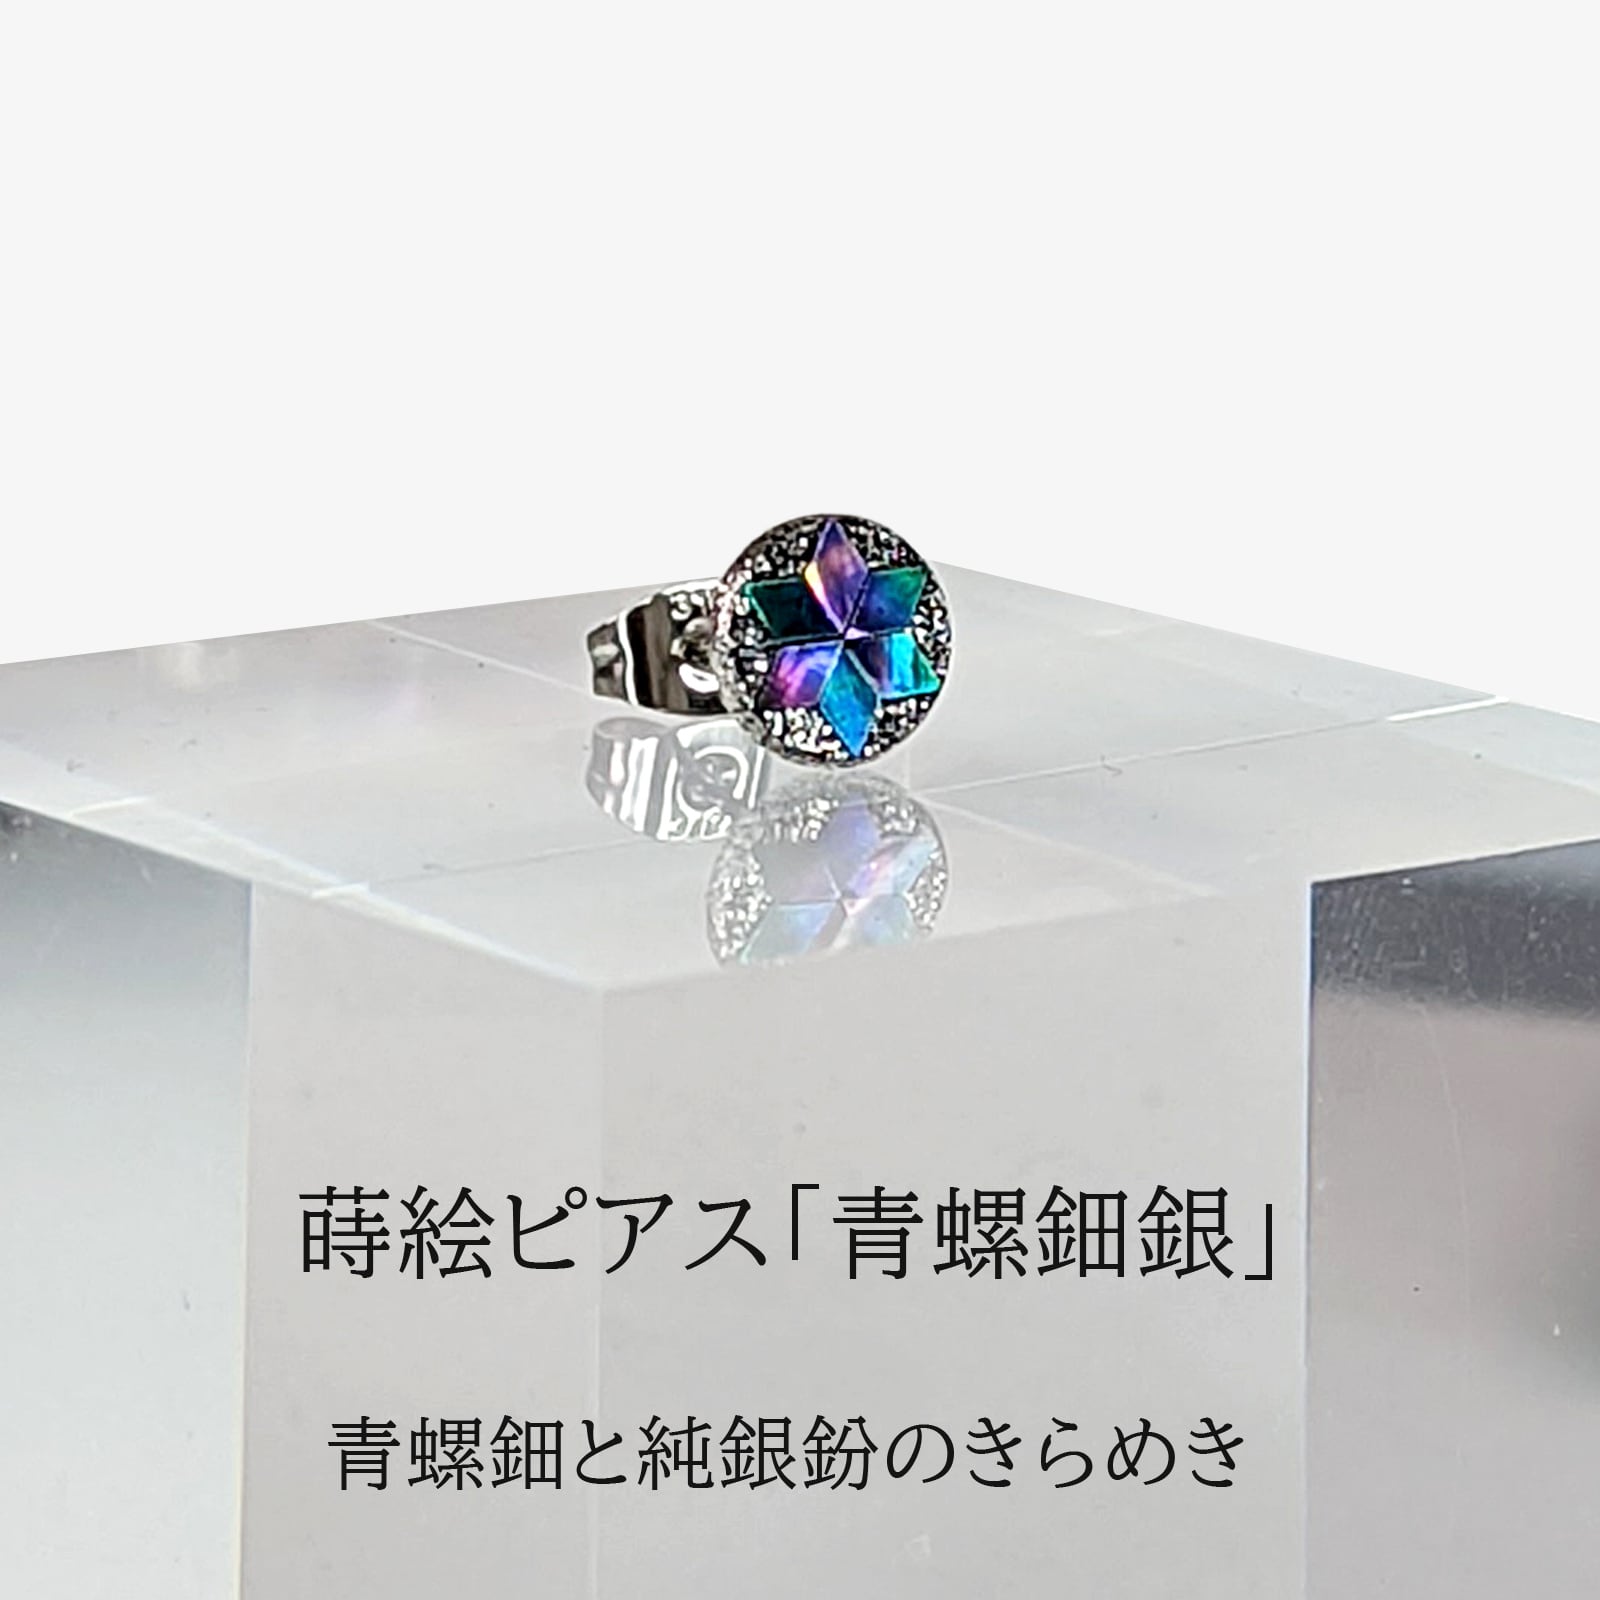 ピアス「青螺鈿銀」M8 シングル用 | shikkaso by urushiproduct